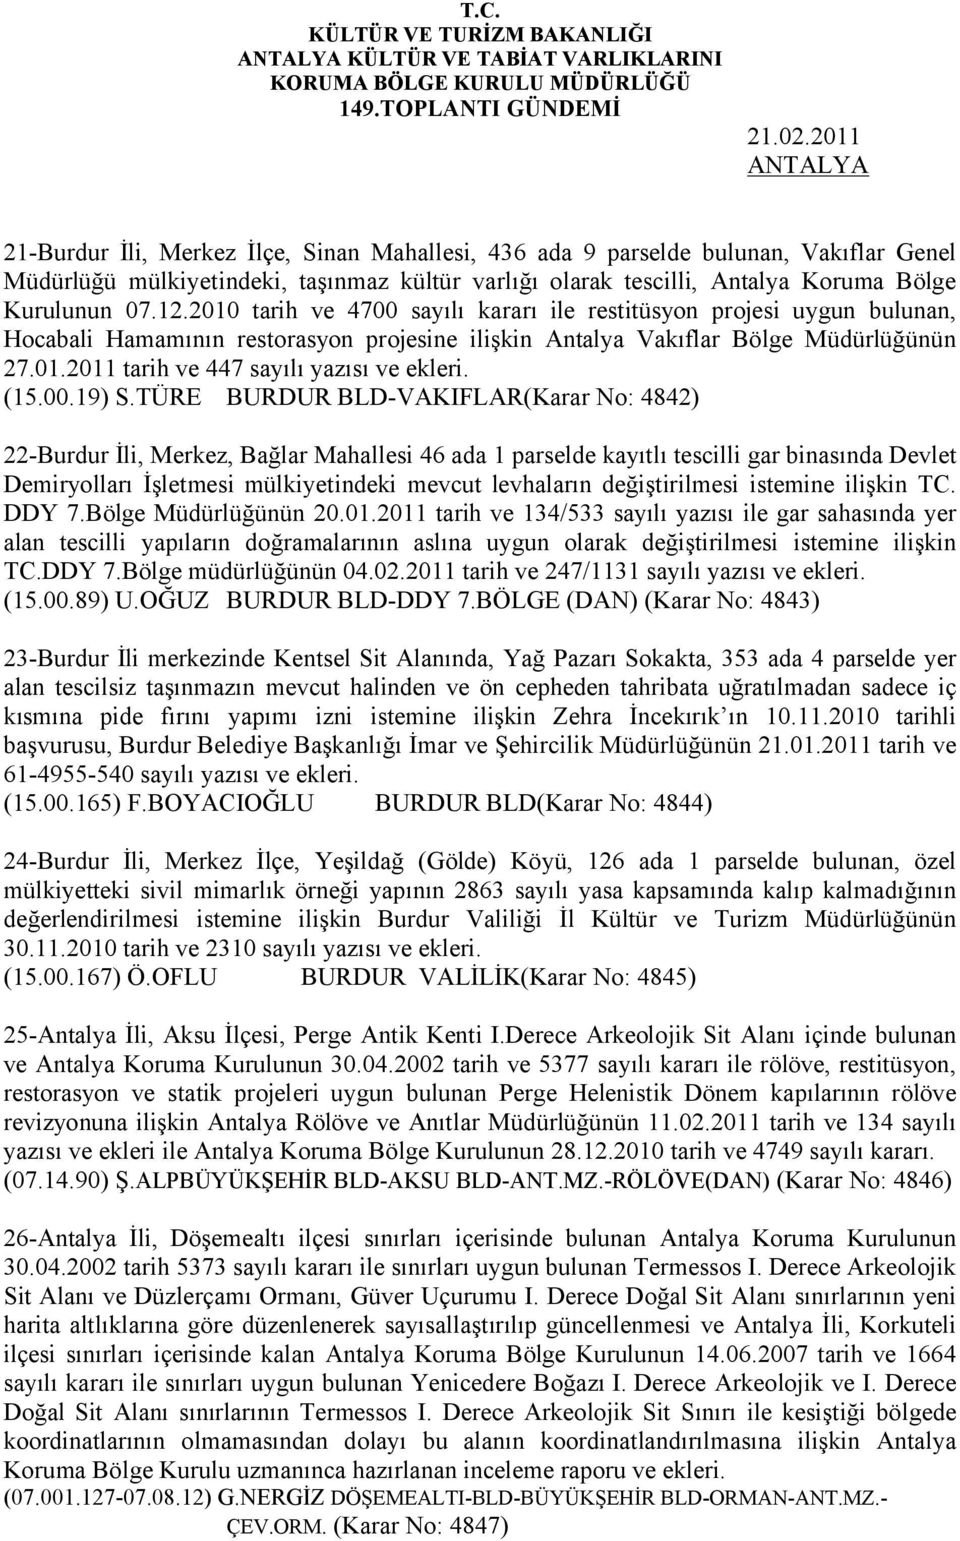 2010 tarih ve 4700 sayılı kararı ile restitüsyon projesi uygun bulunan, Hocabali Hamamının restorasyon projesine ilişkin Antalya Vakıflar Bölge Müdürlüğünün 27.01.2011 tarih ve 447 sayılı yazısı ve ekleri.